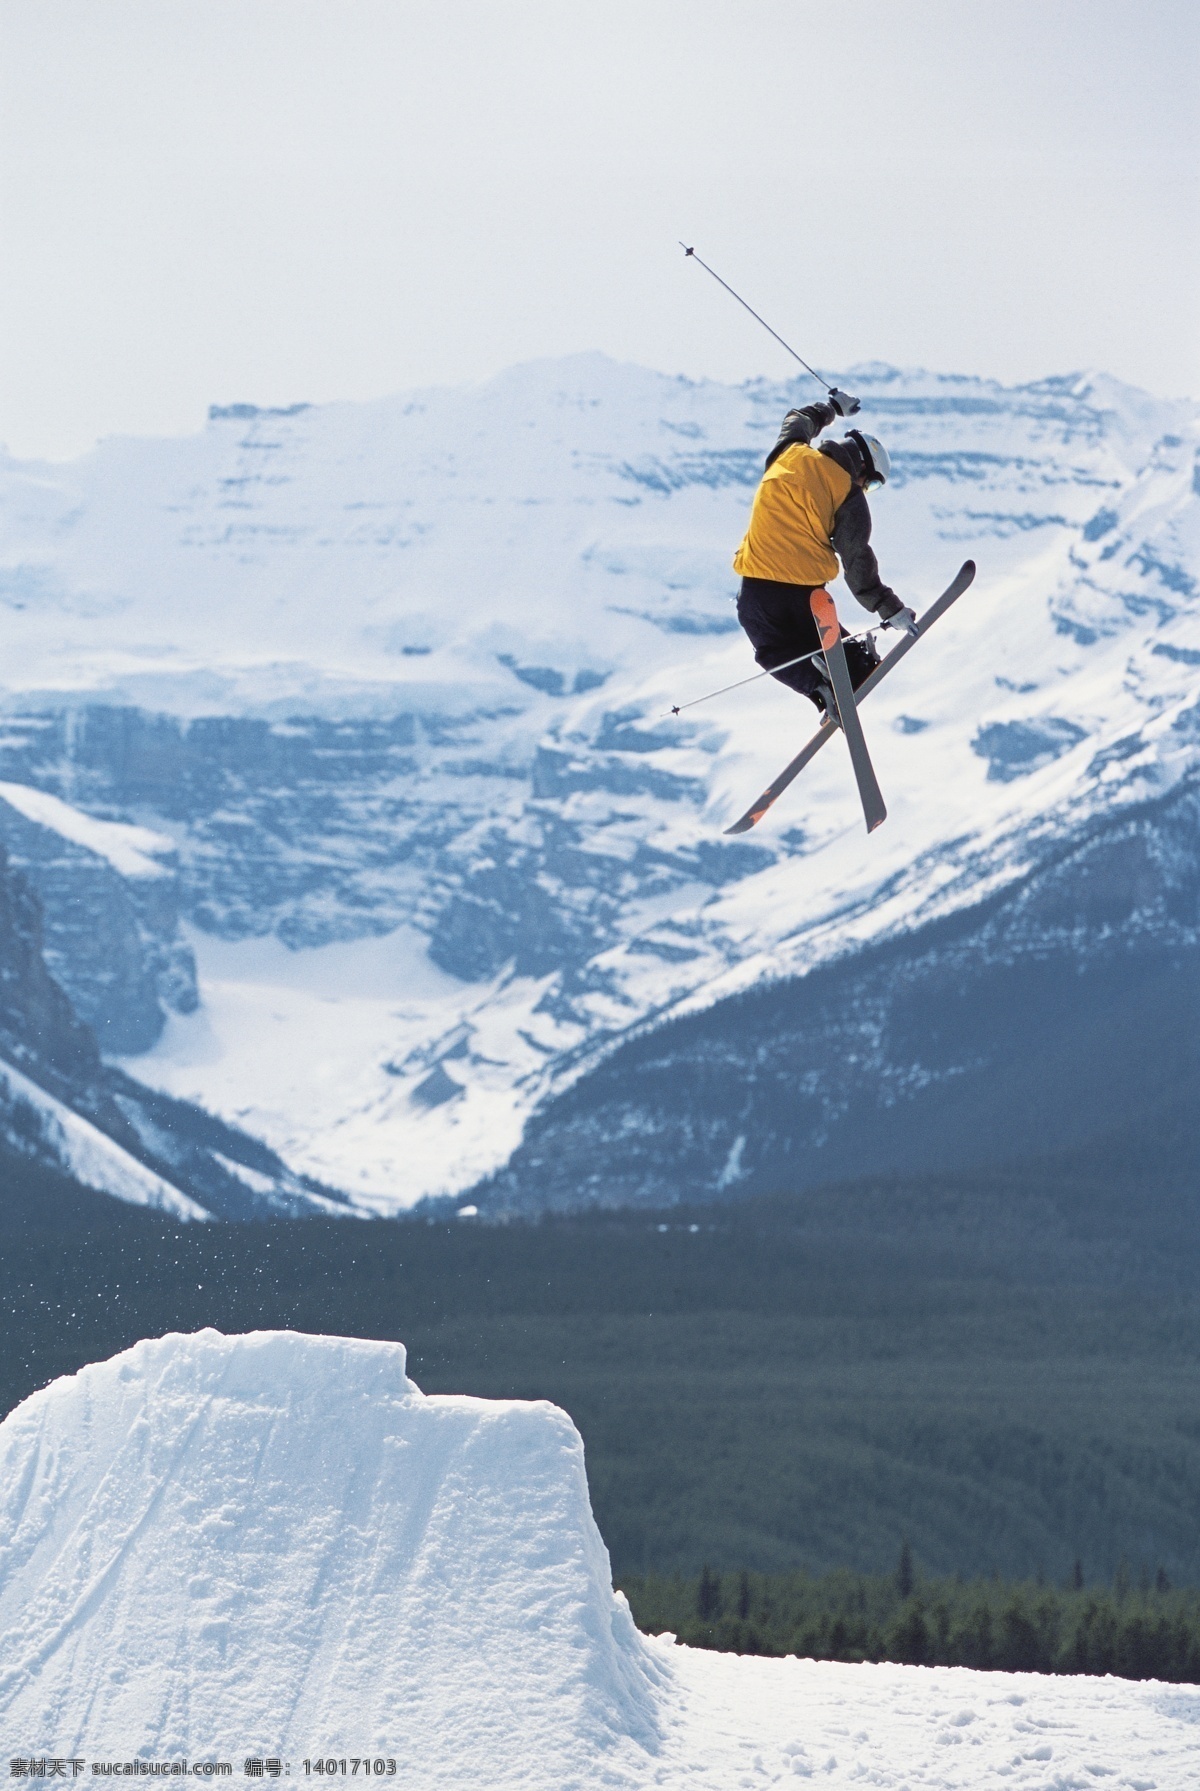 双板 滑雪 飞起 瞬间 摄影图片 高山滑雪 越野滑雪 双板滑雪 生活百科 滑雪图片